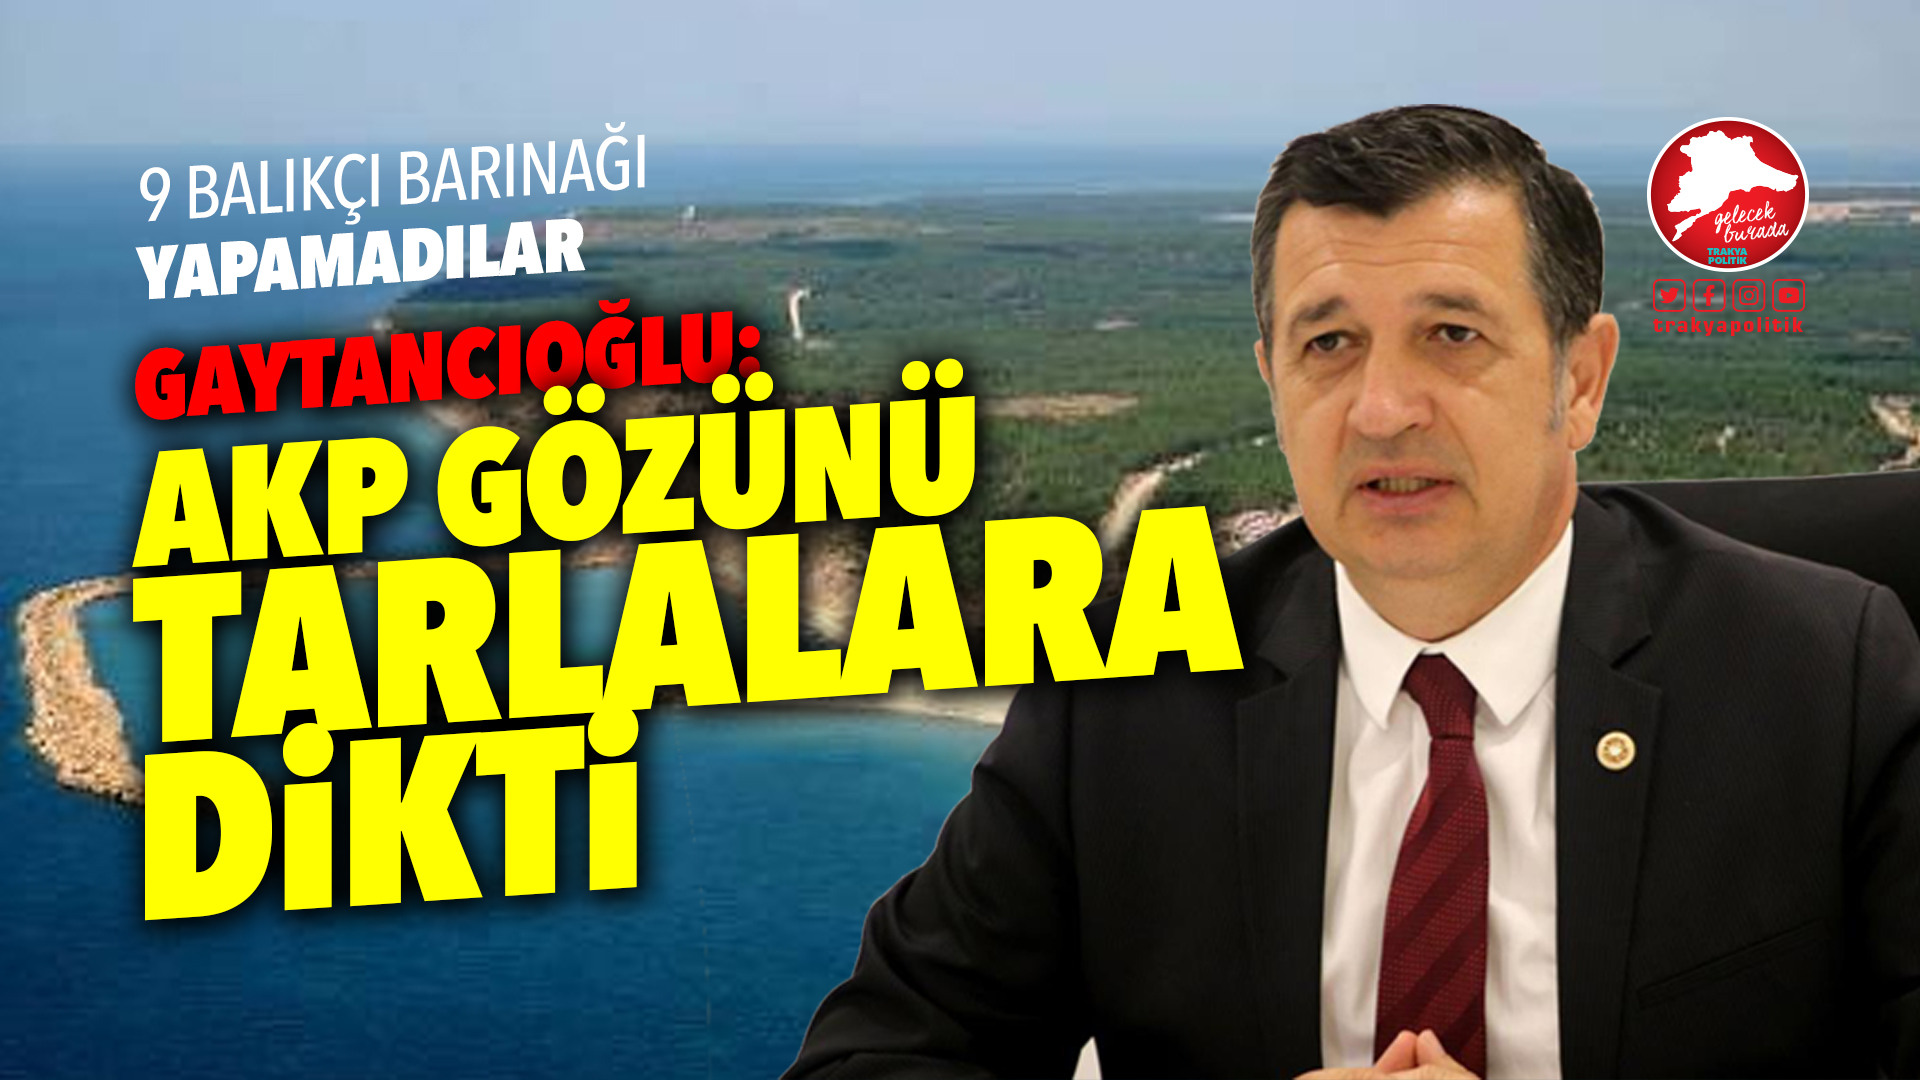 Gaytancıoğlu: “AKP gözünü tarlalara dikti”